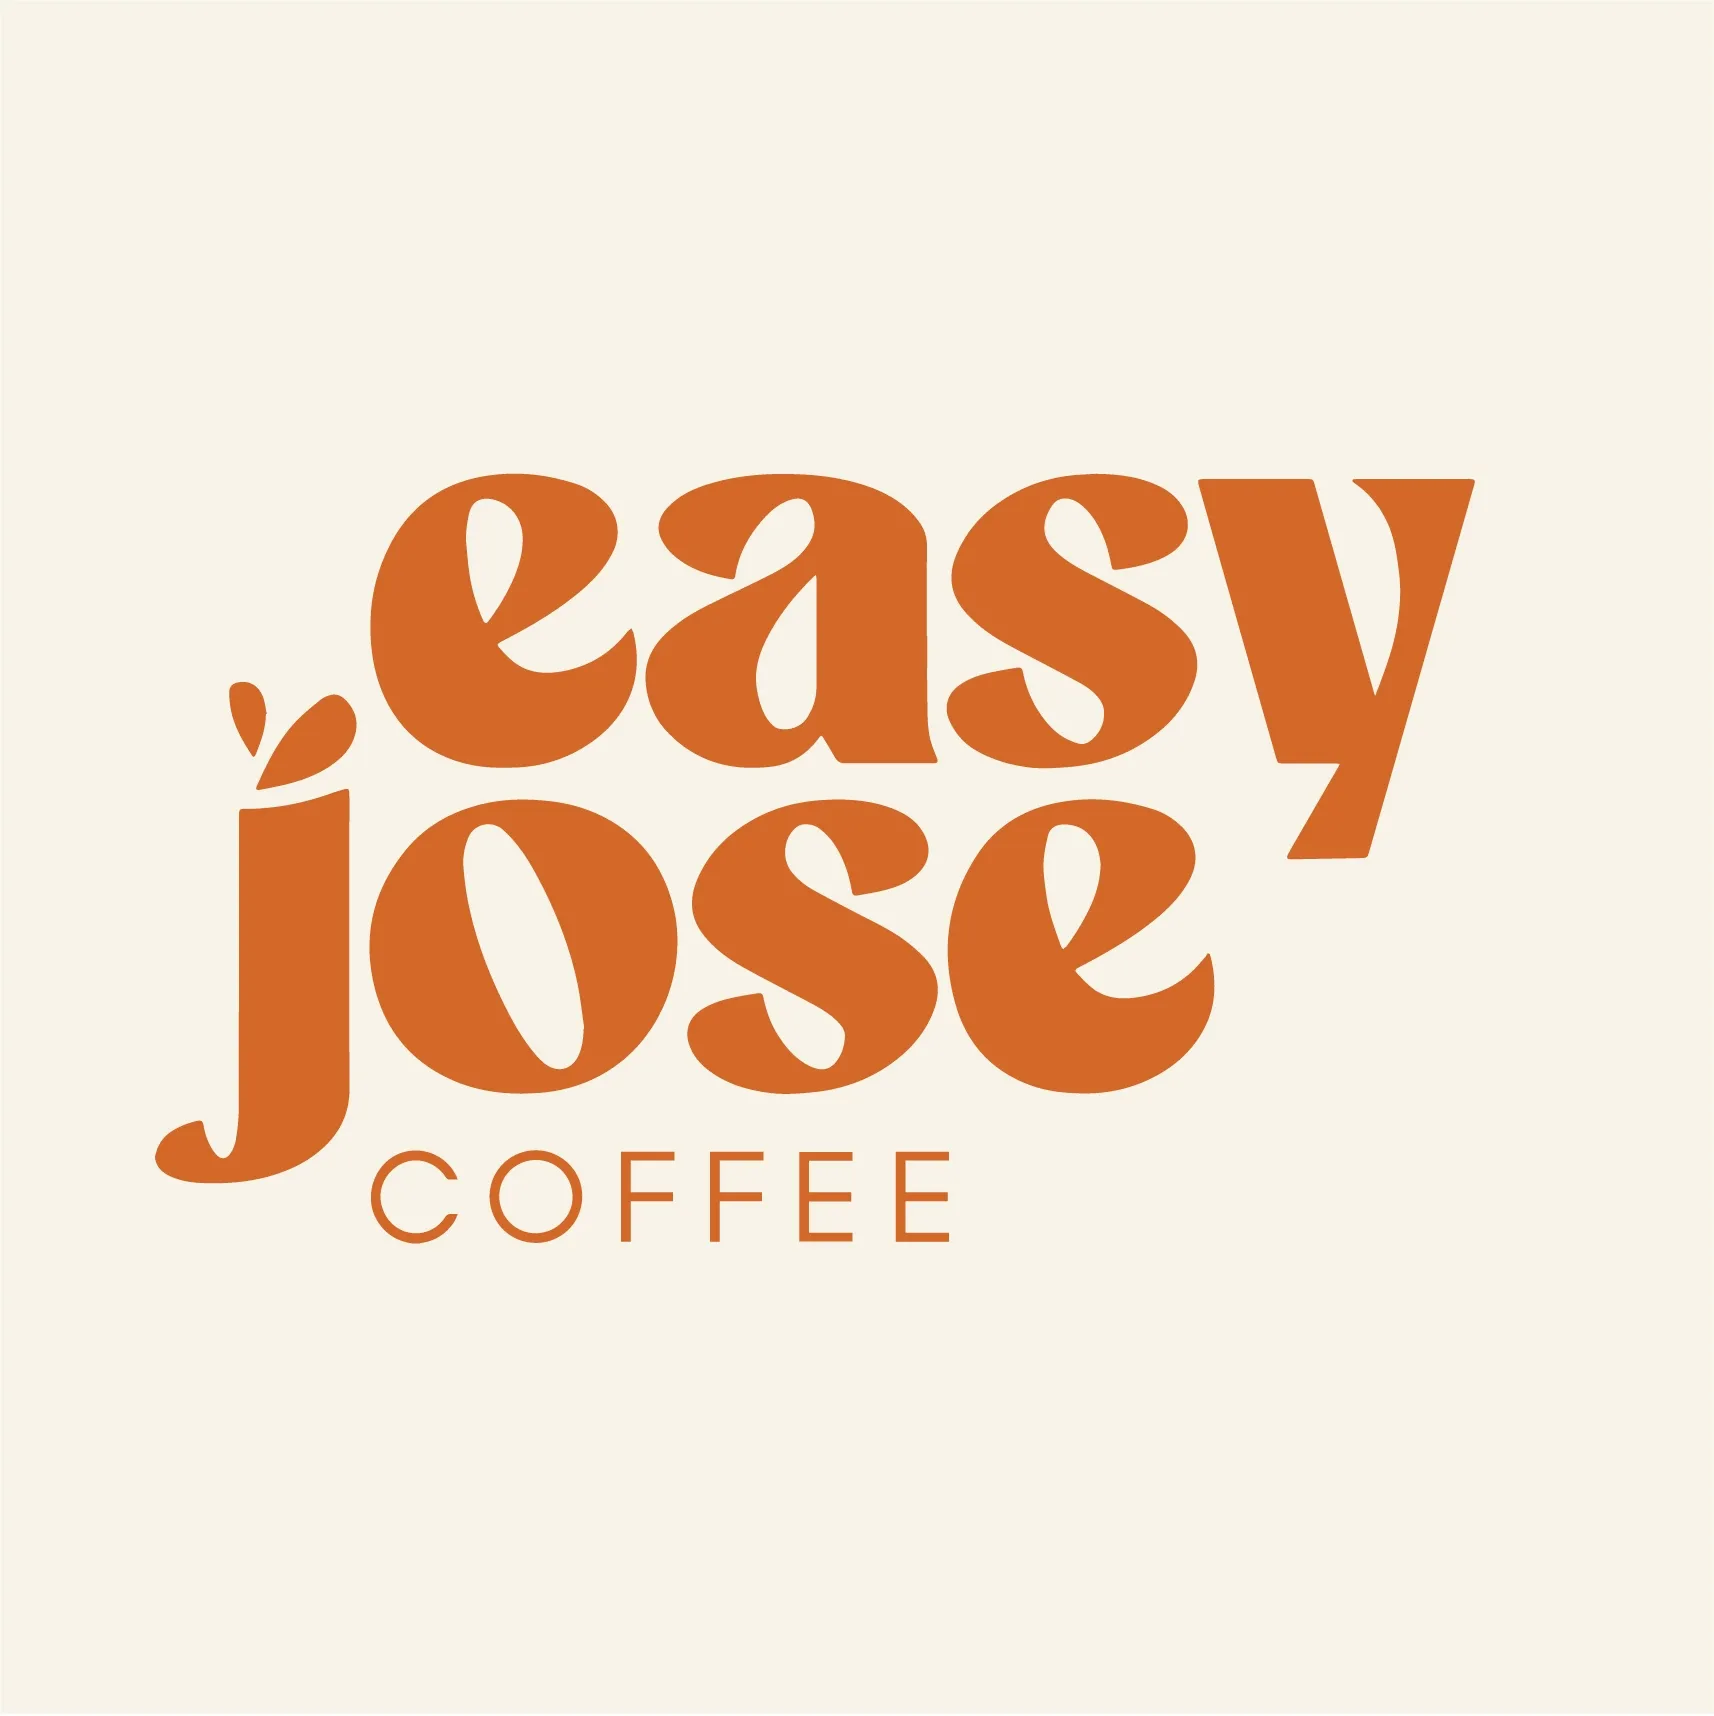 easyjosecoffee.co.uk